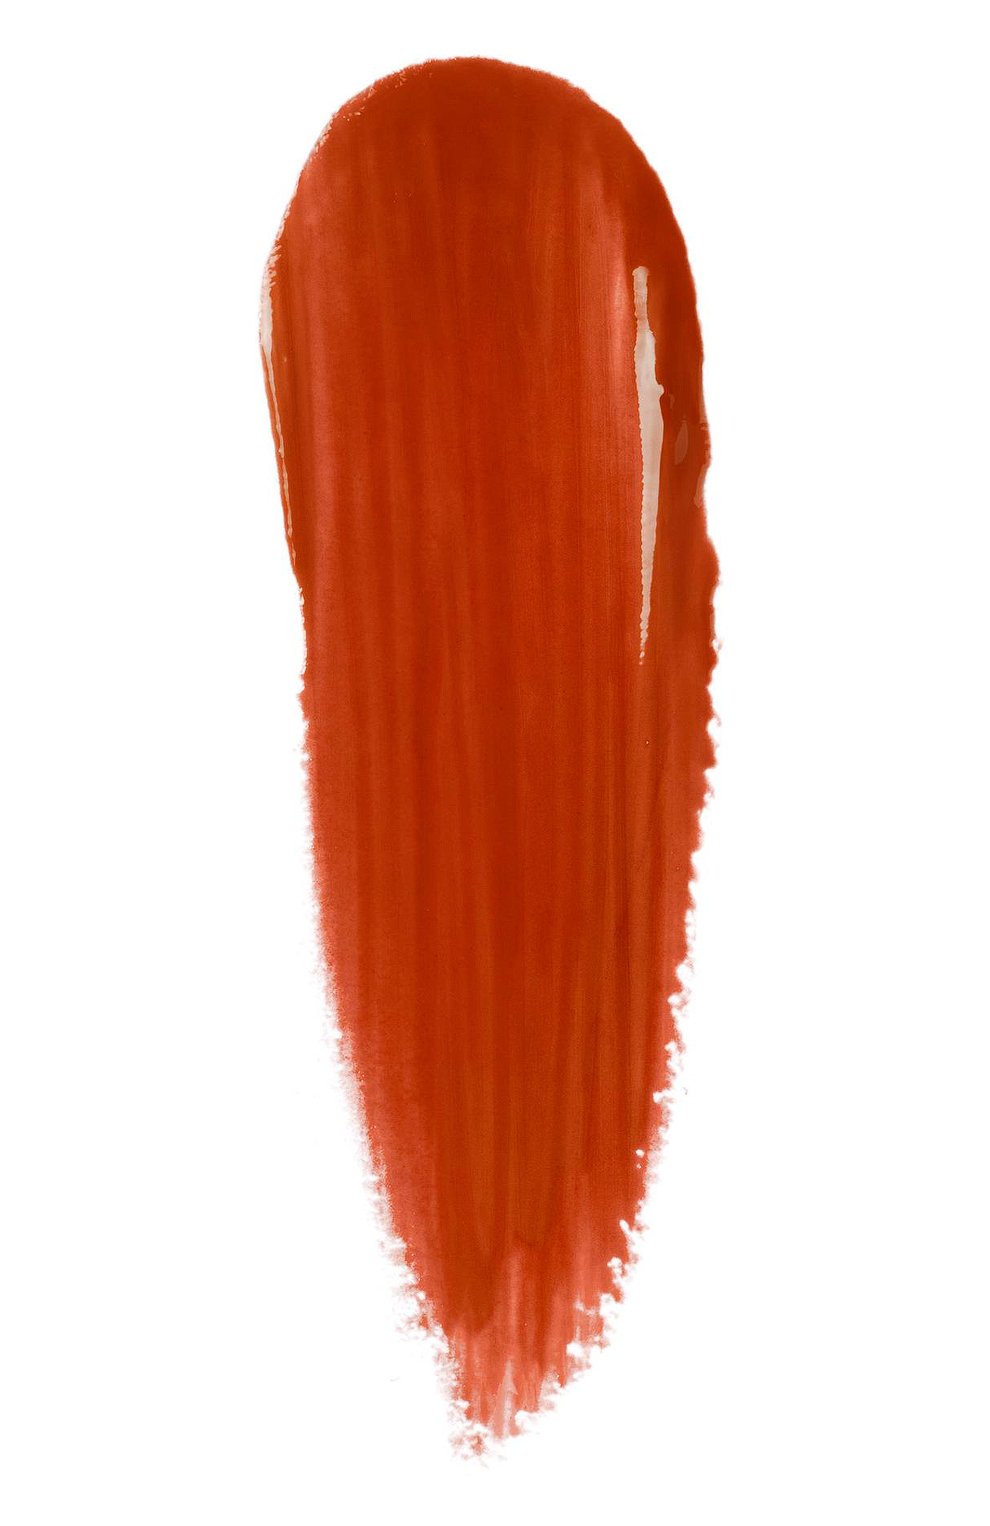 Губная помада rouge de beauté brillant, 515 devotion GUCCI  цвета, арт. 3614228844888 | Фото 3 (Финишное покрытие: Блестящий)